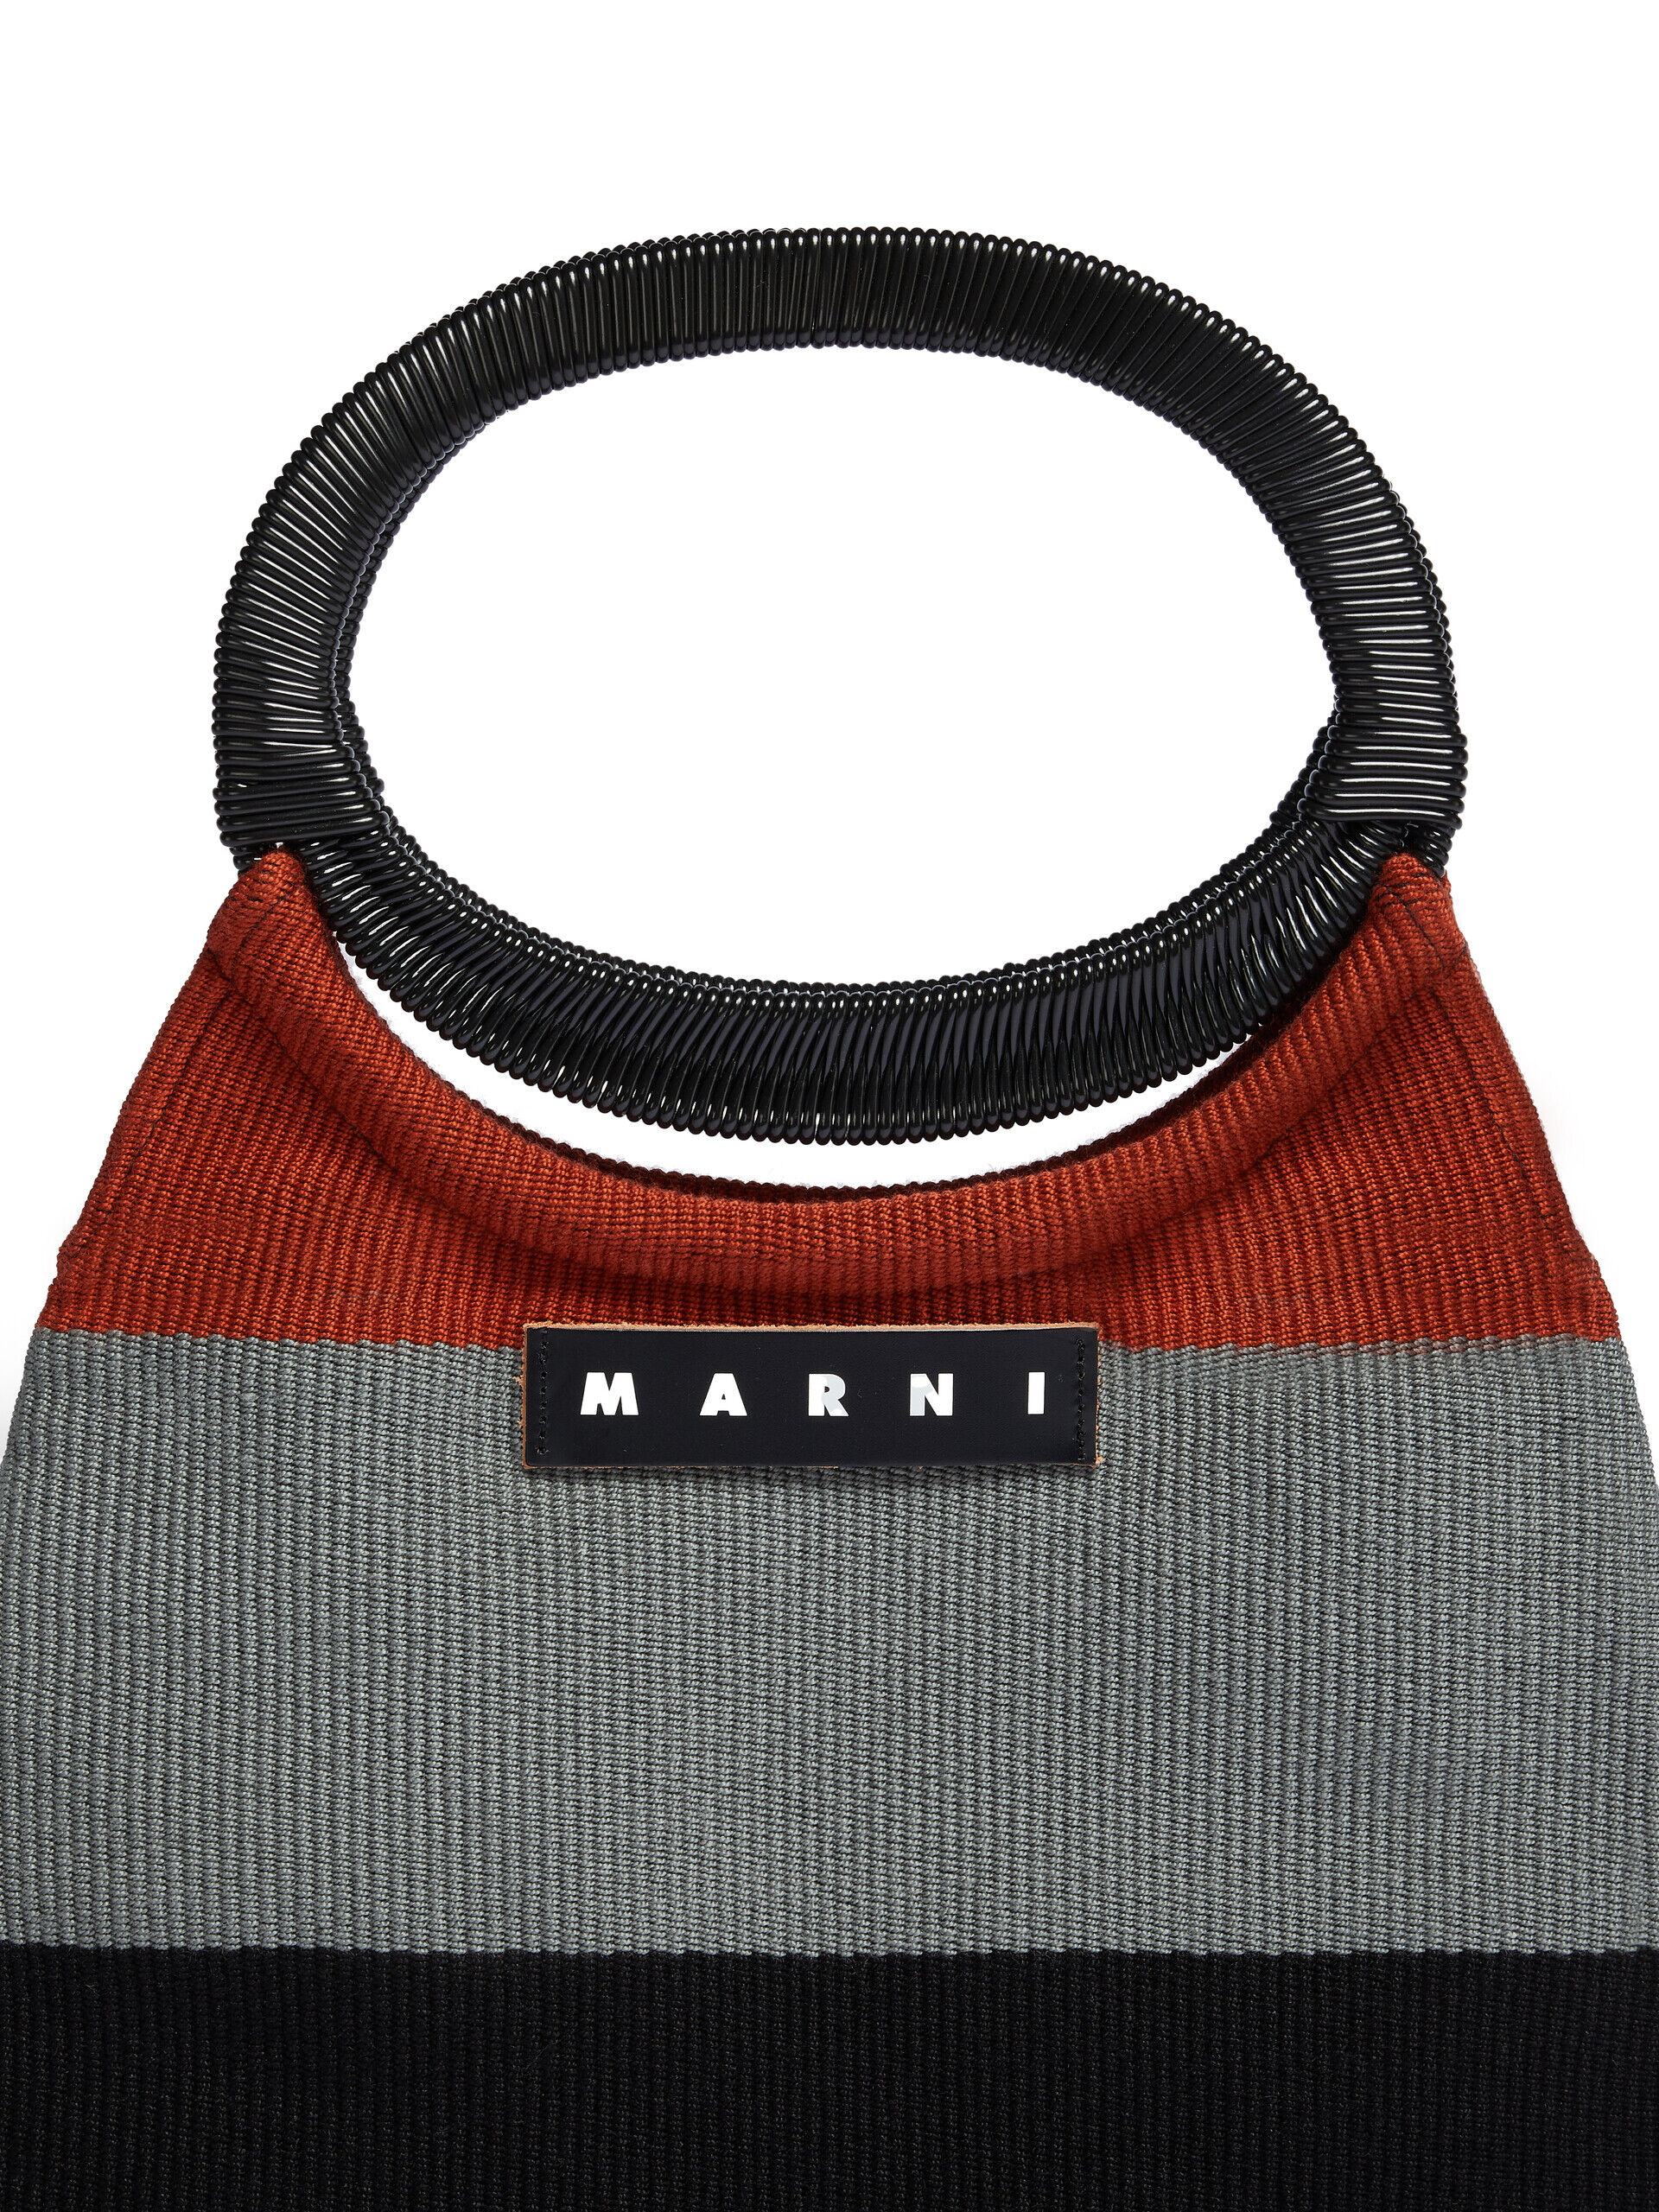 スモーク MARNI MARKET BOAT BAG | Marni